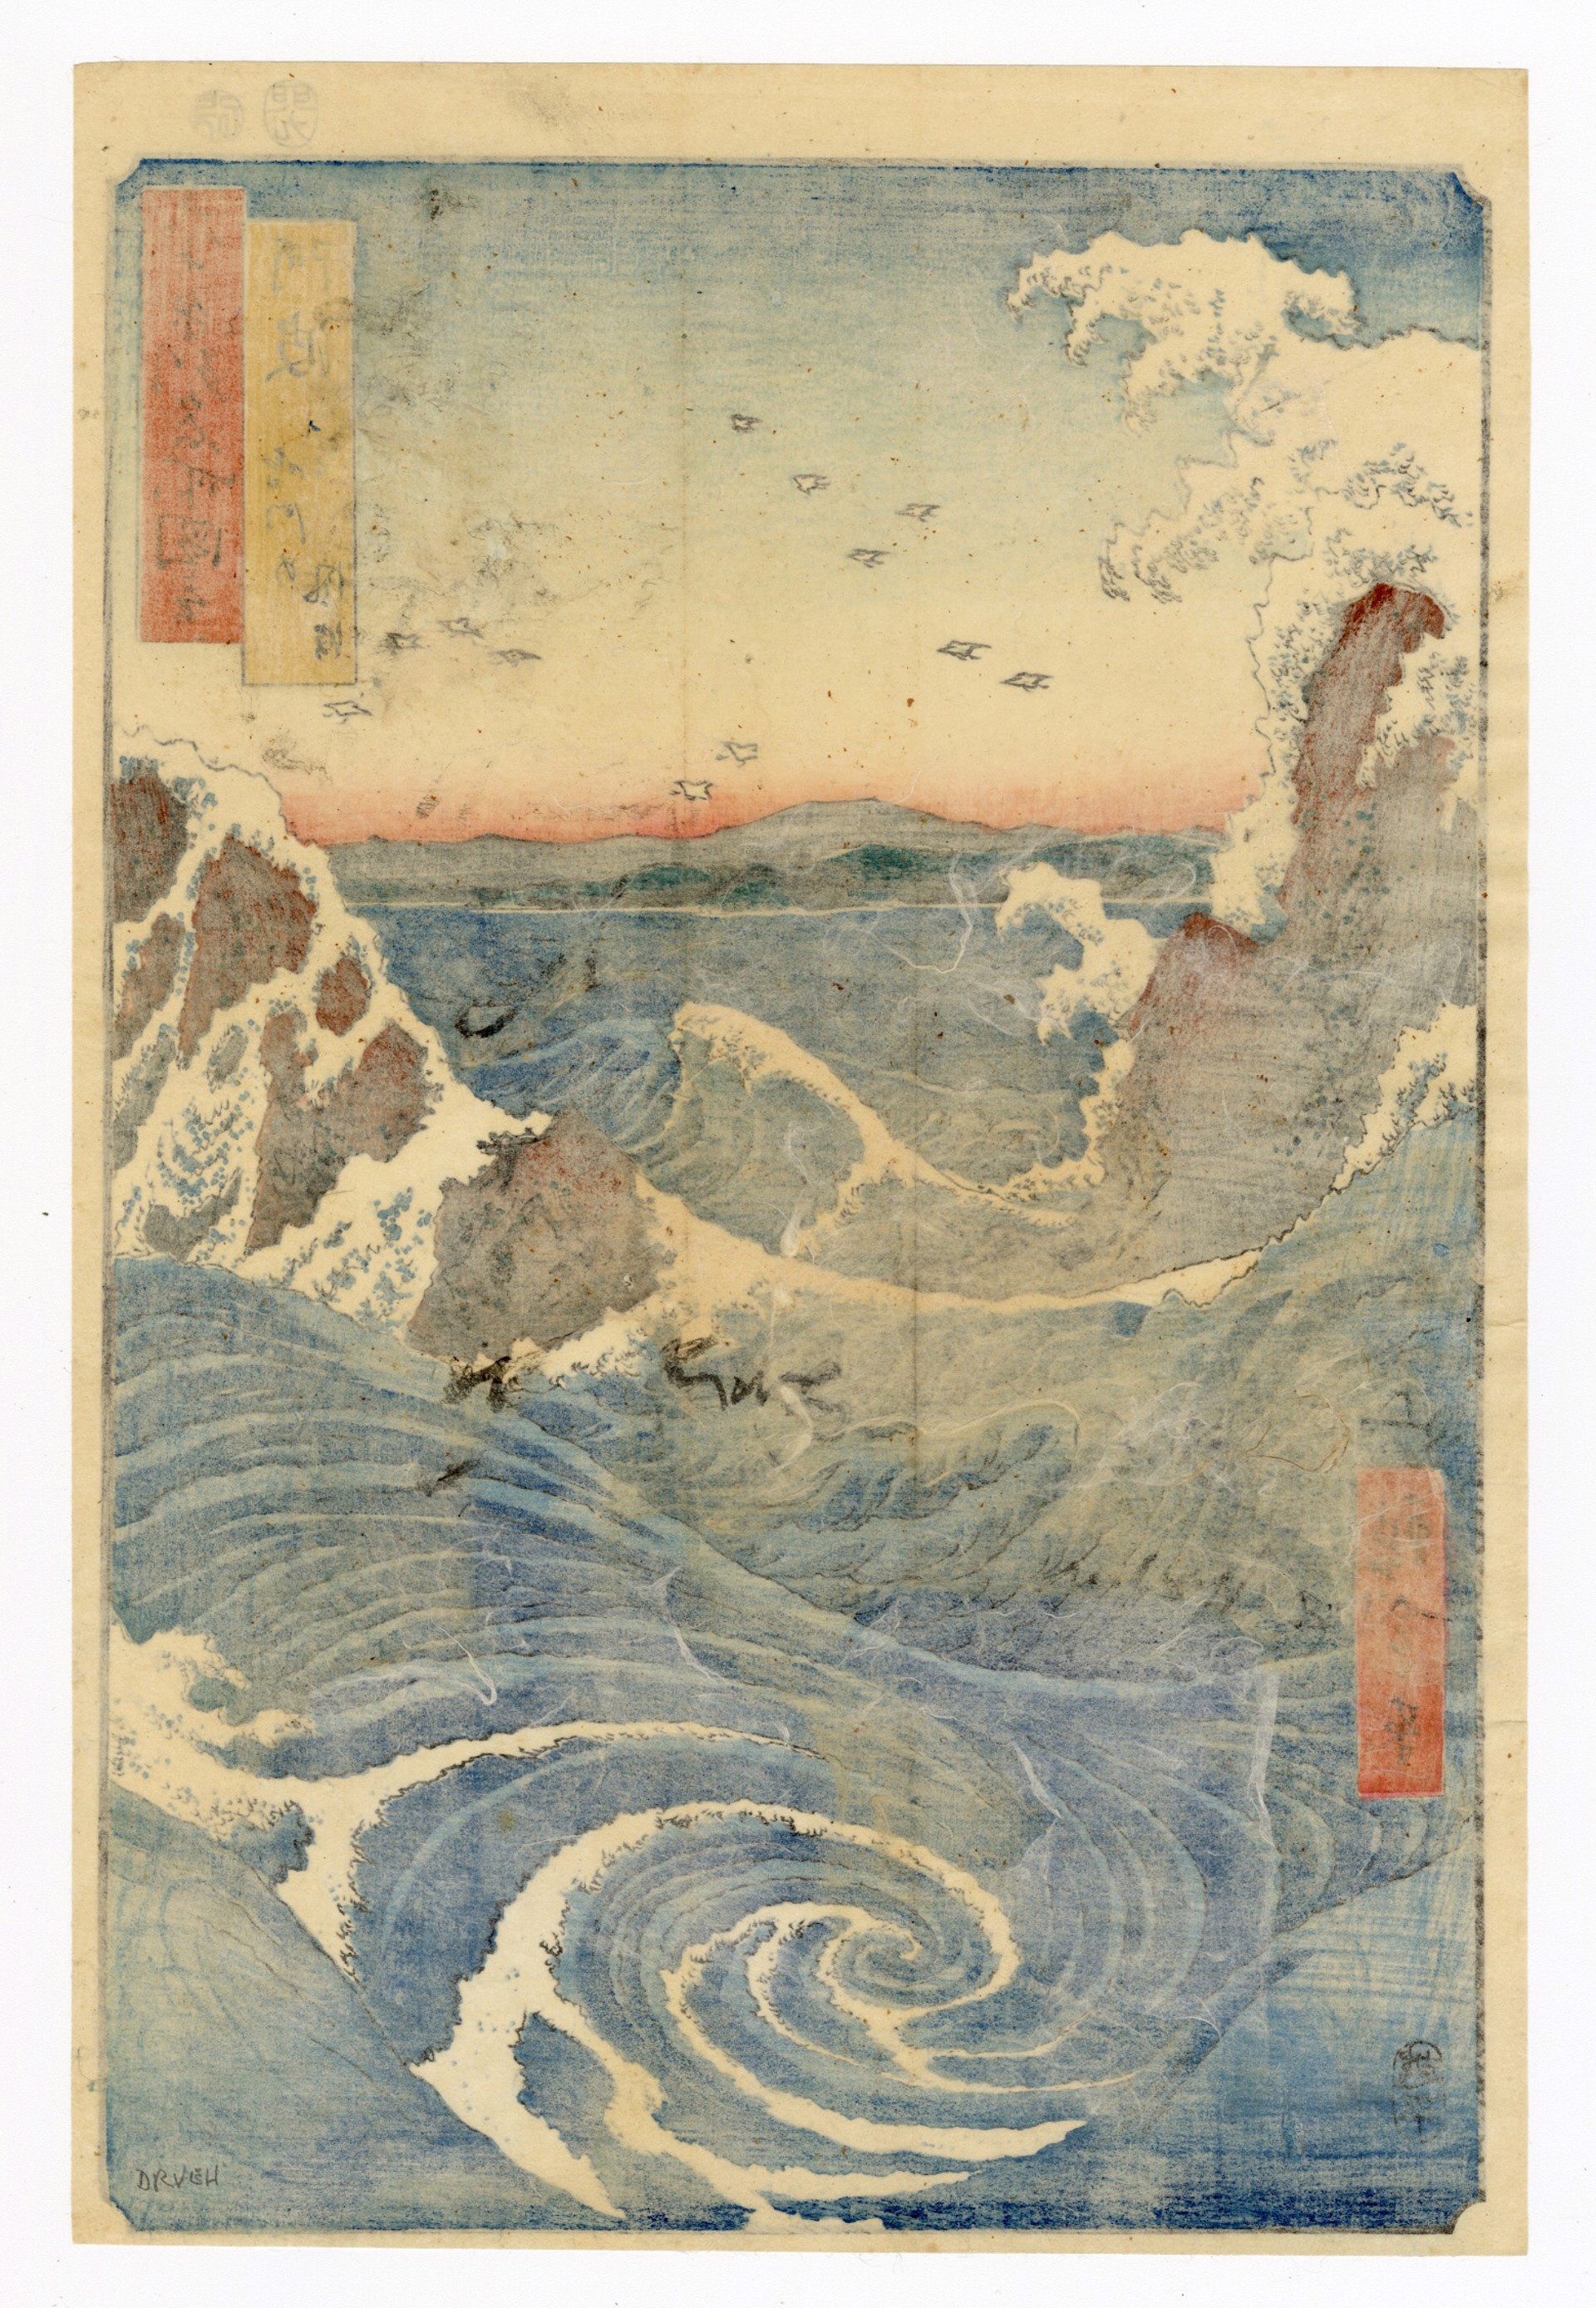 Naruta Whirlpools, Awa Province by Hiroshige